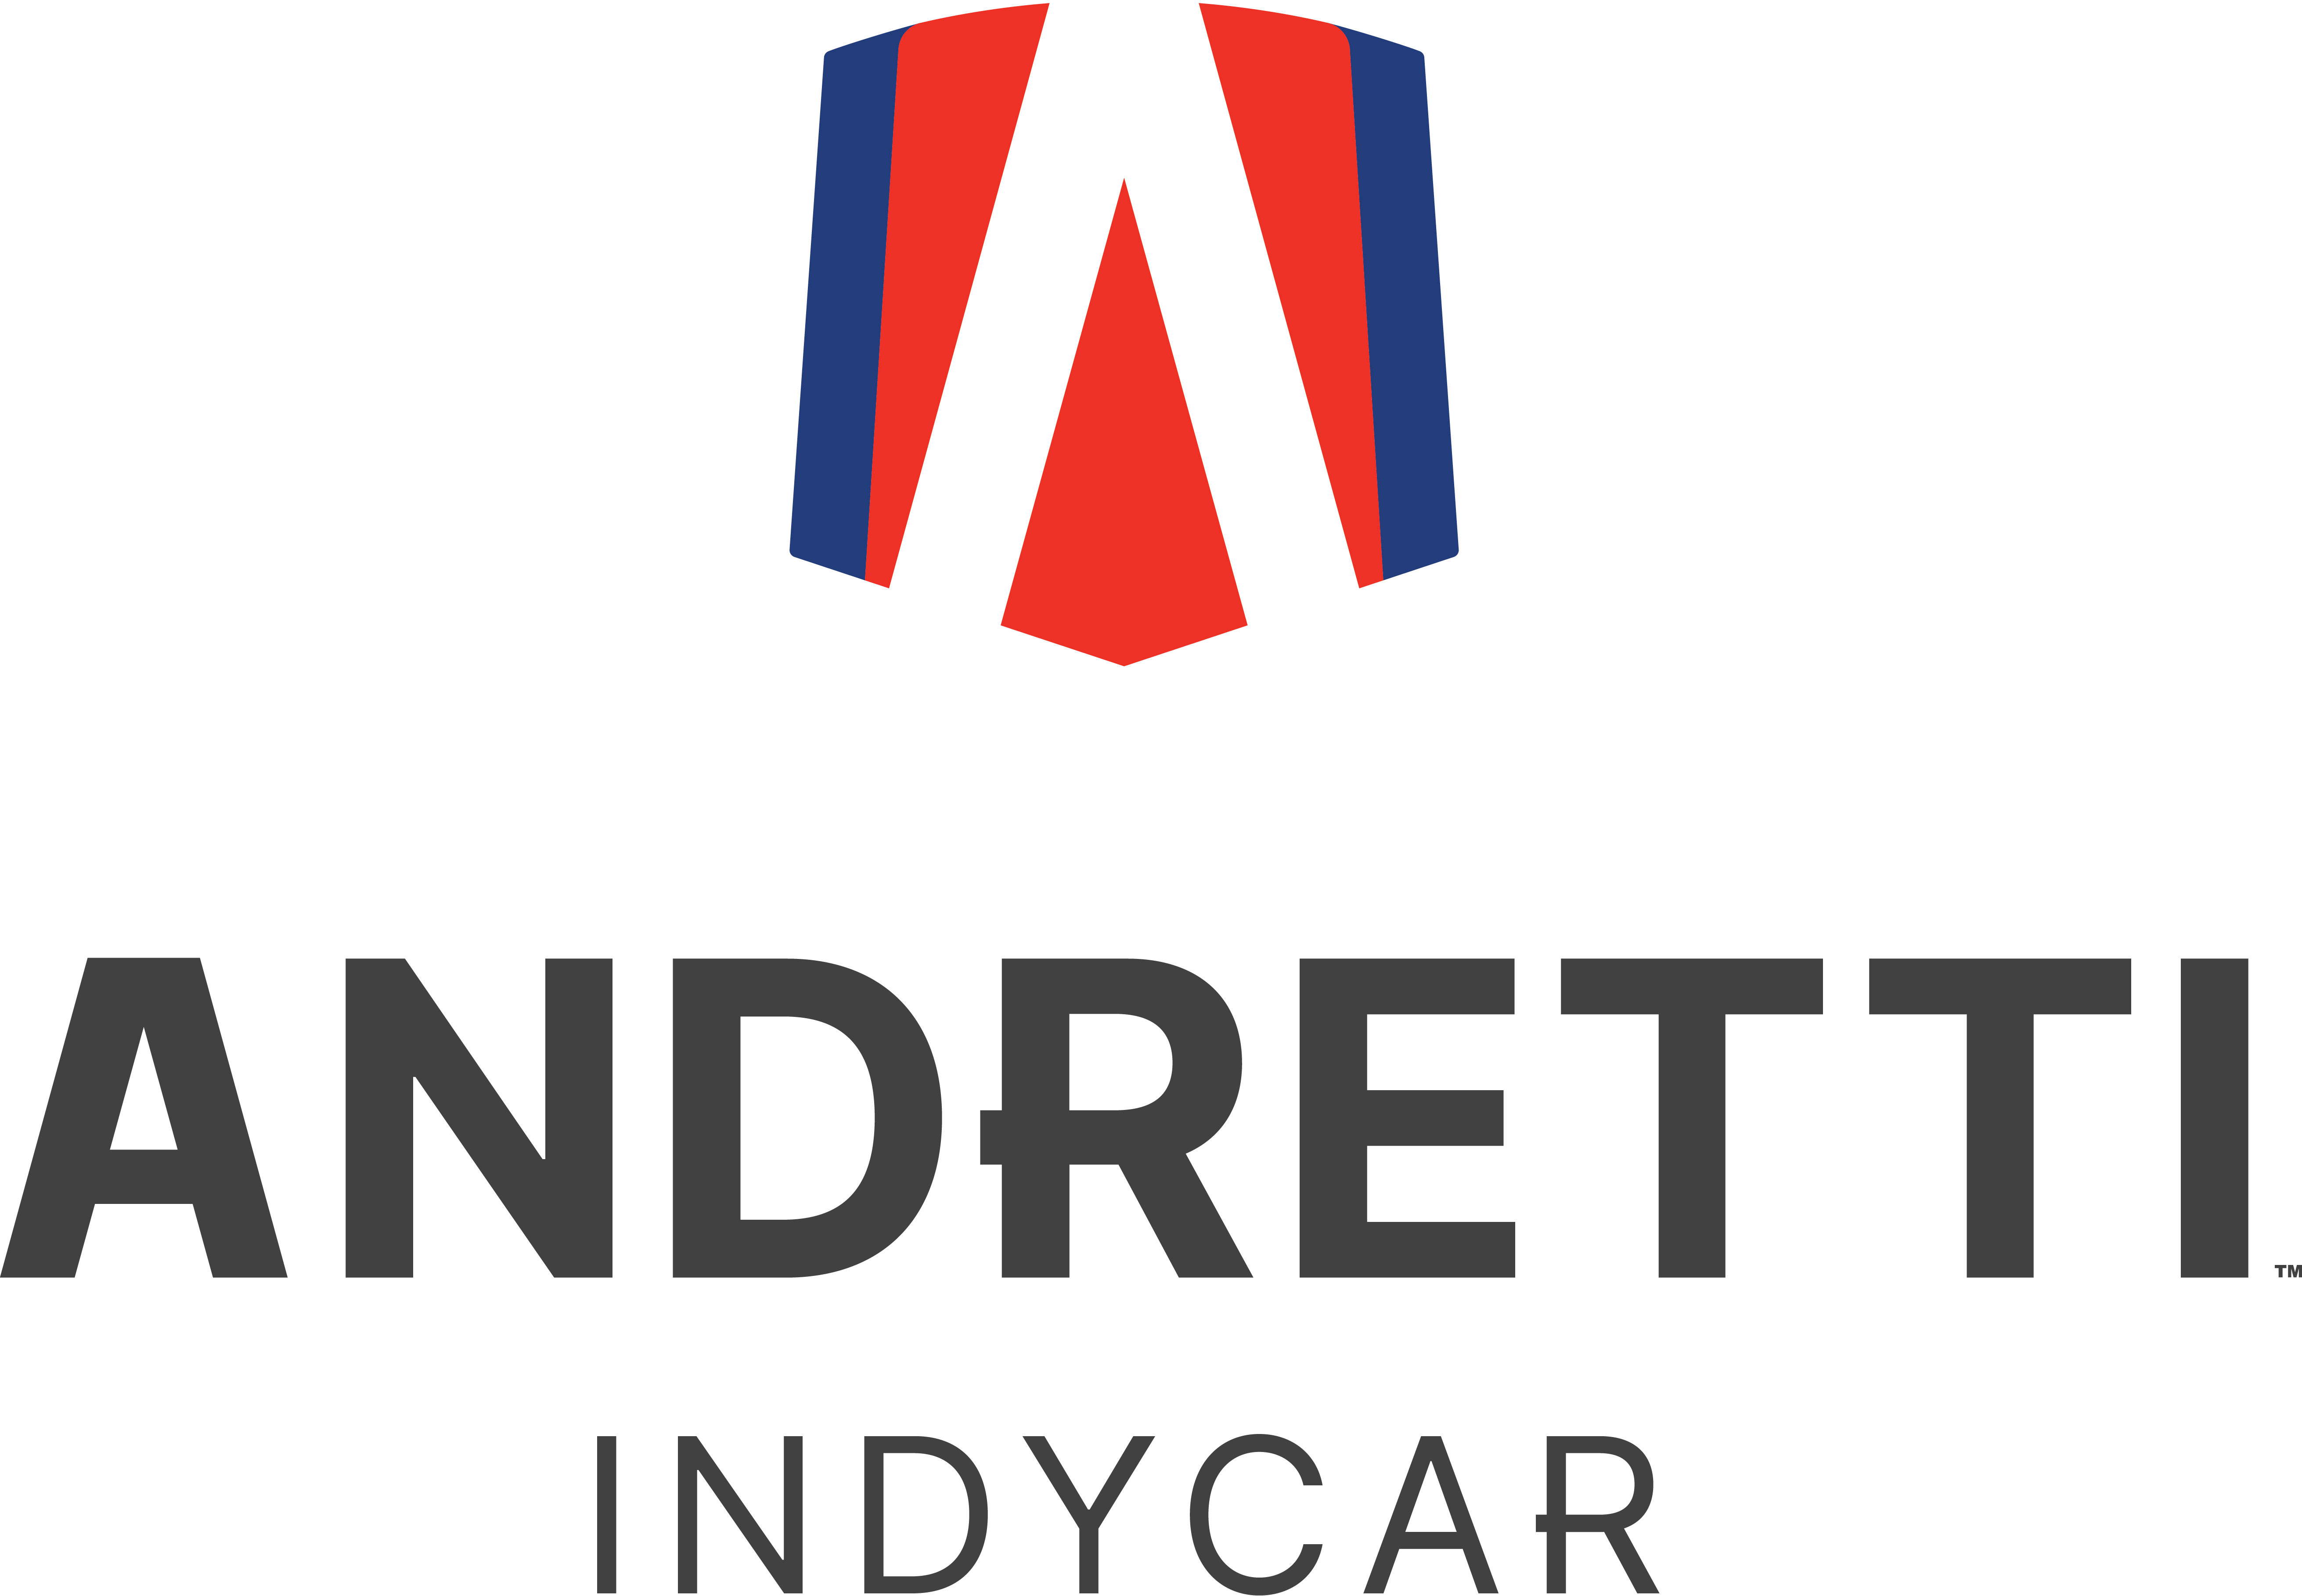 Andretti IndyCar Team logo